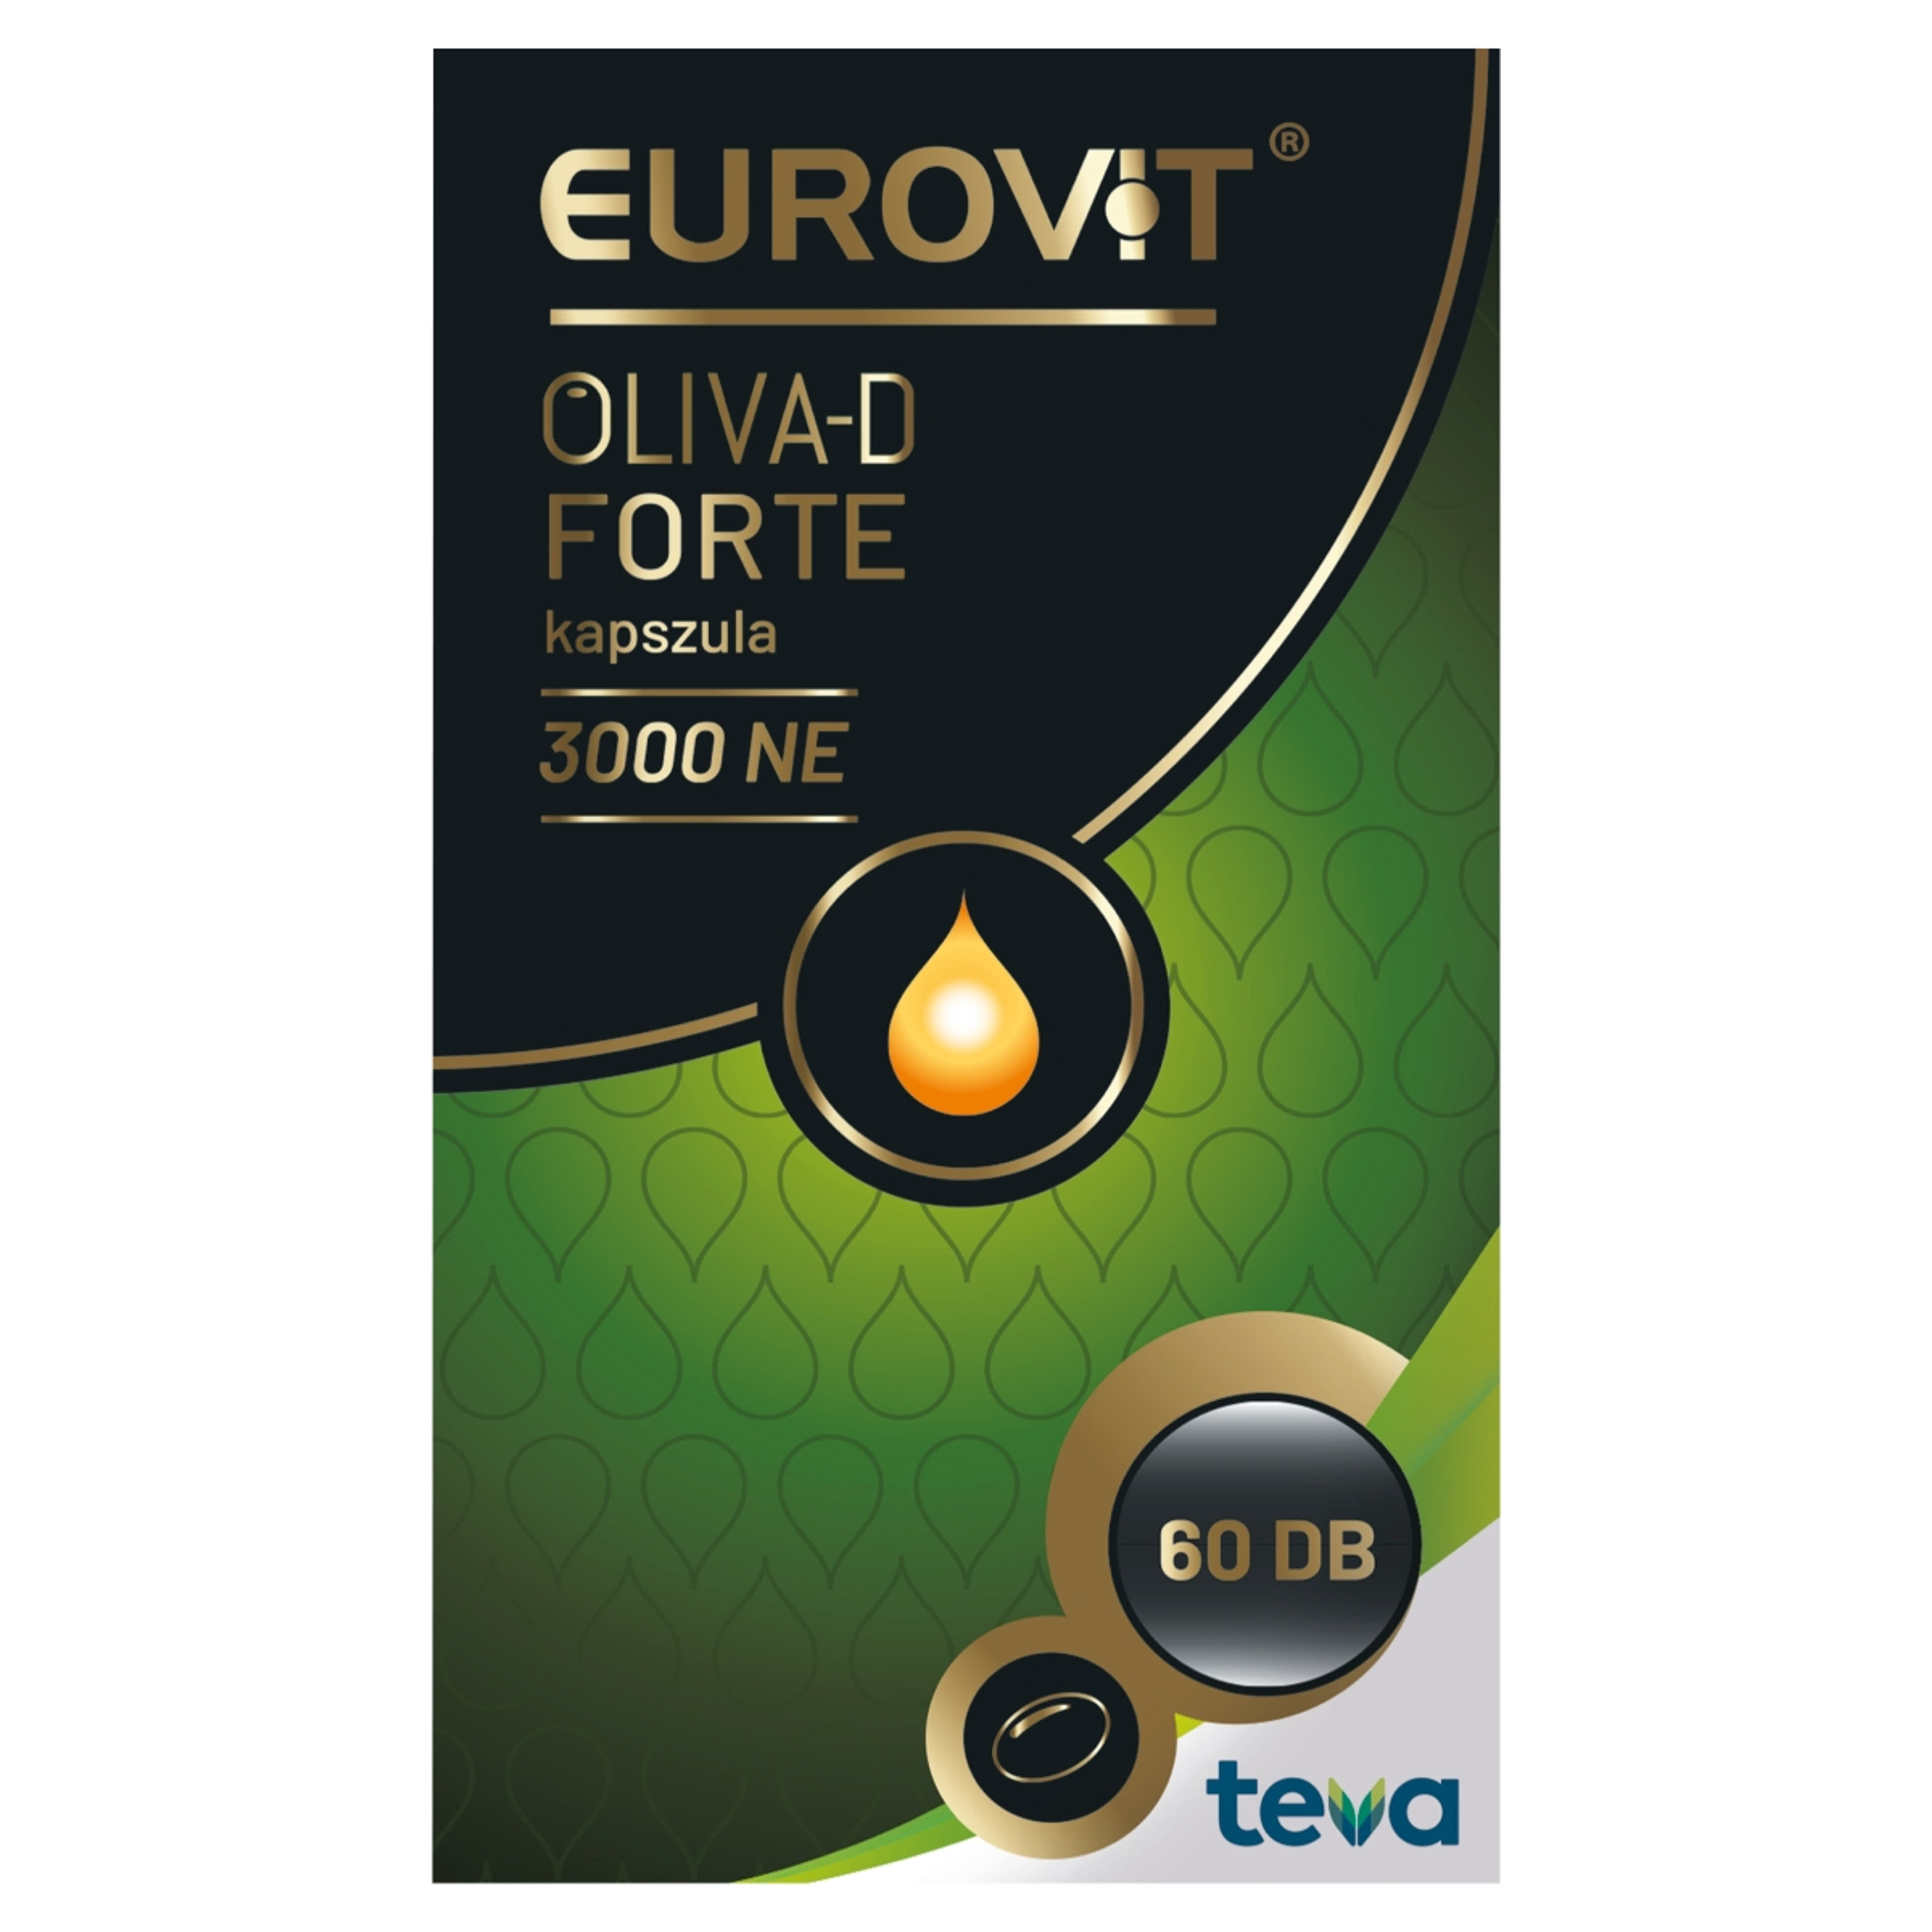 Eurovit Oliva-D 3000 NE kapszula - 60 db